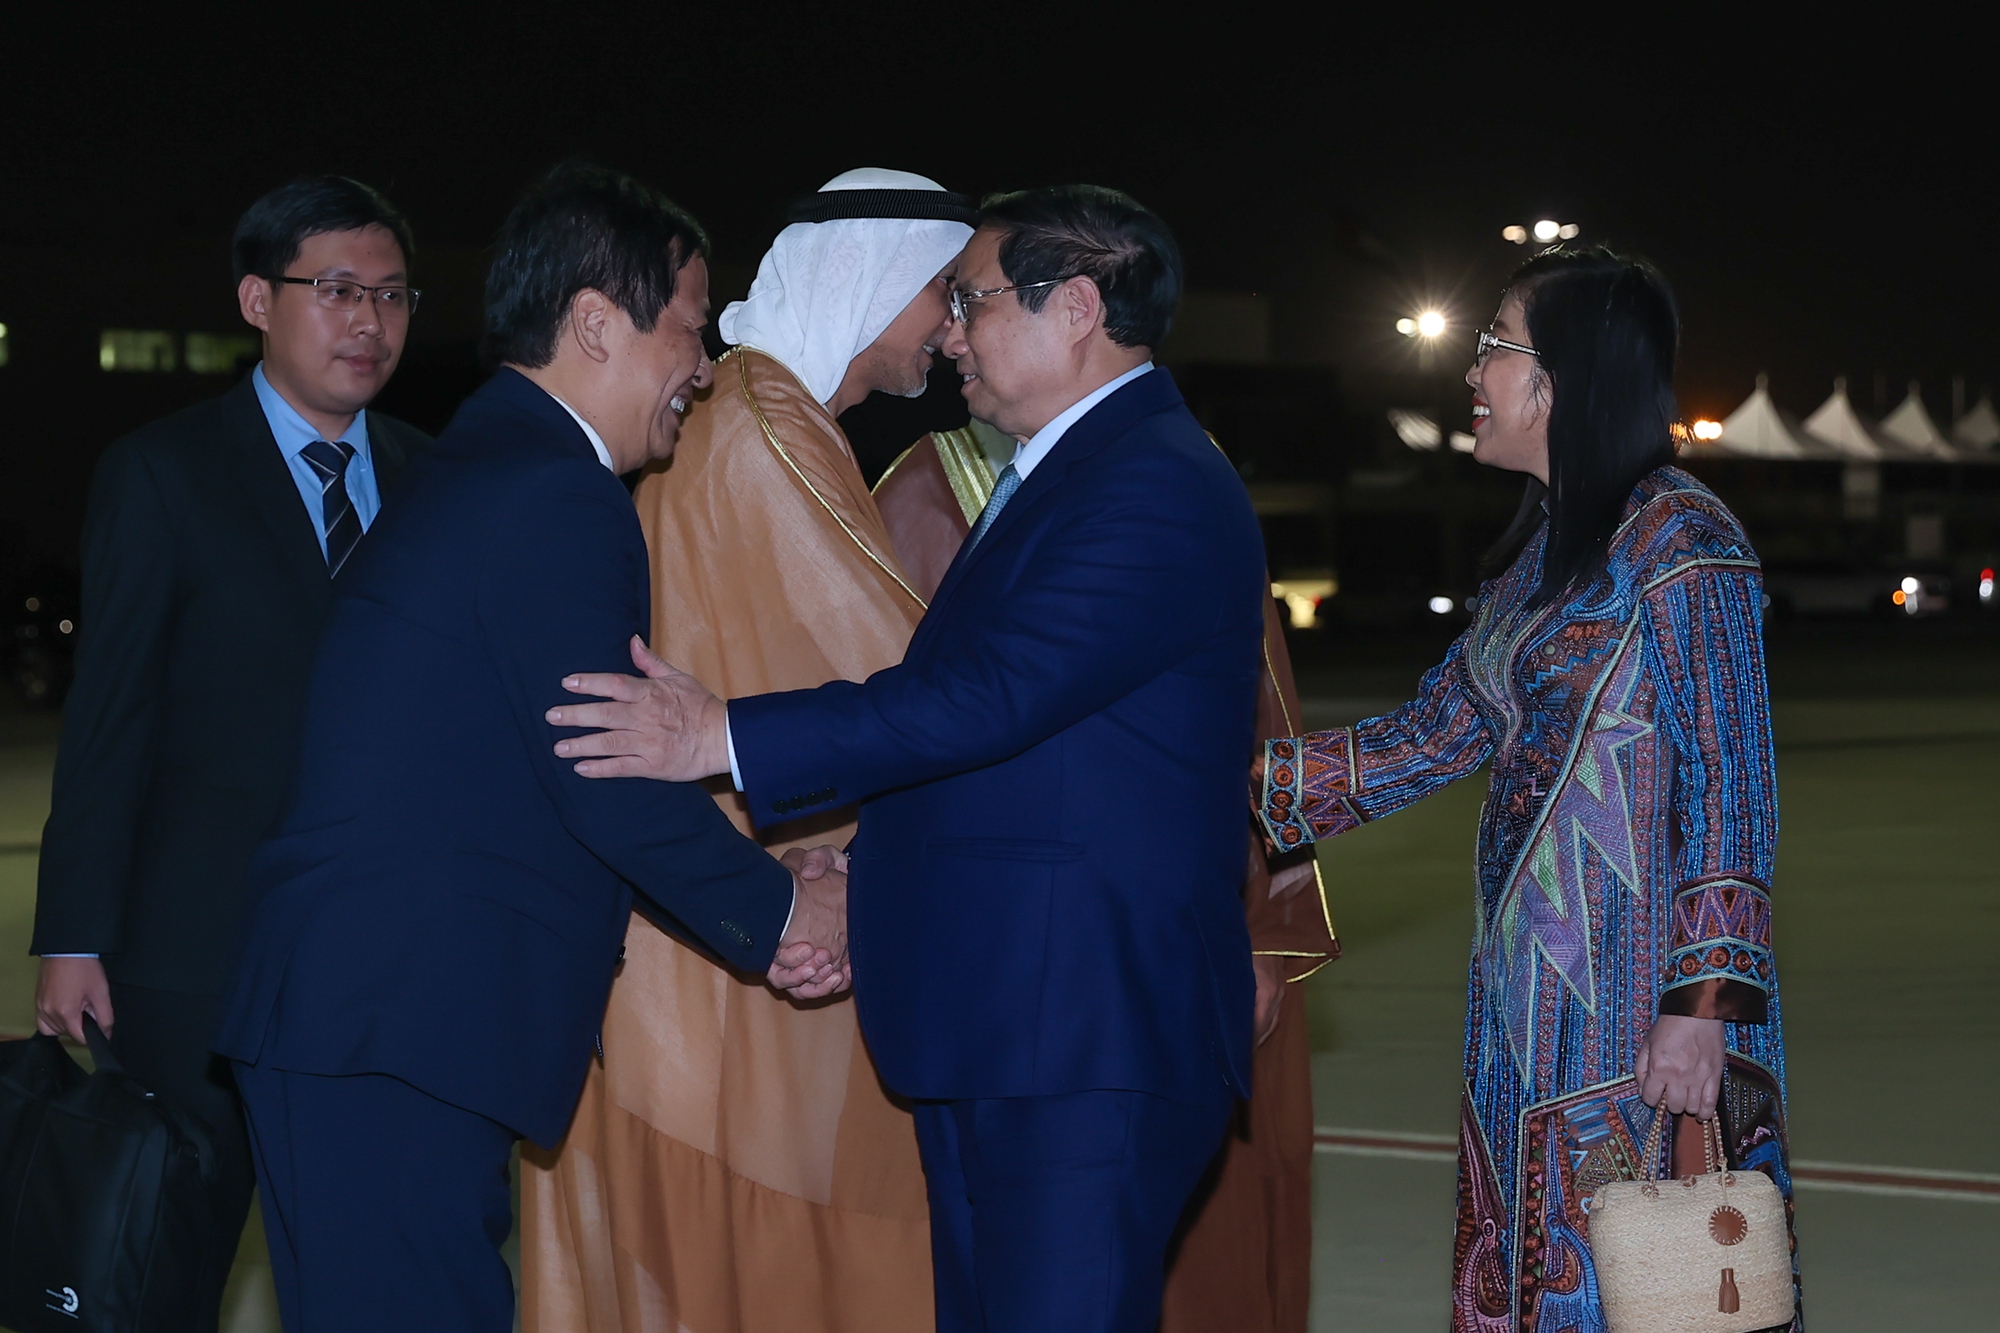 Chuyến công tác tham dự COP28, tiến hành một số hoạt động song phương tại UAE của Thủ tướng vừa khẳng định chủ trương nhất quán của Việt Nam về tăng trưởng xanh, ứng phó với biến đổi khí hậu; vừa góp phần củng cố tin cậy chính trị, nâng cao hiệu quả hợp tác giữa Việt Nam và UAE - Ảnh: VGP/Nhật Bắc